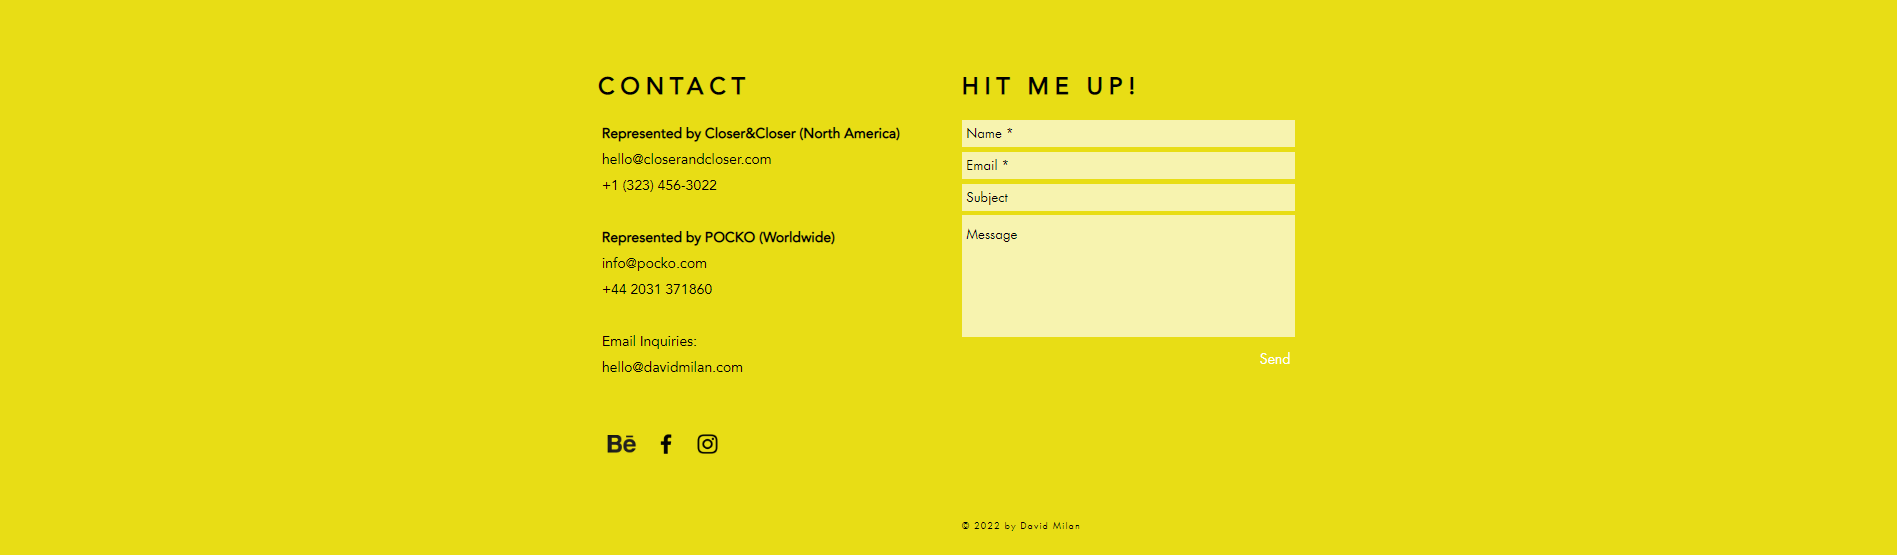 Página "CONTACT" do portfólio do David Milan, formada por um fundo amarelo contendo: dados de e-mail, telefone e redes sociais à esquerda; e um campo para enviar mensagem à direita.